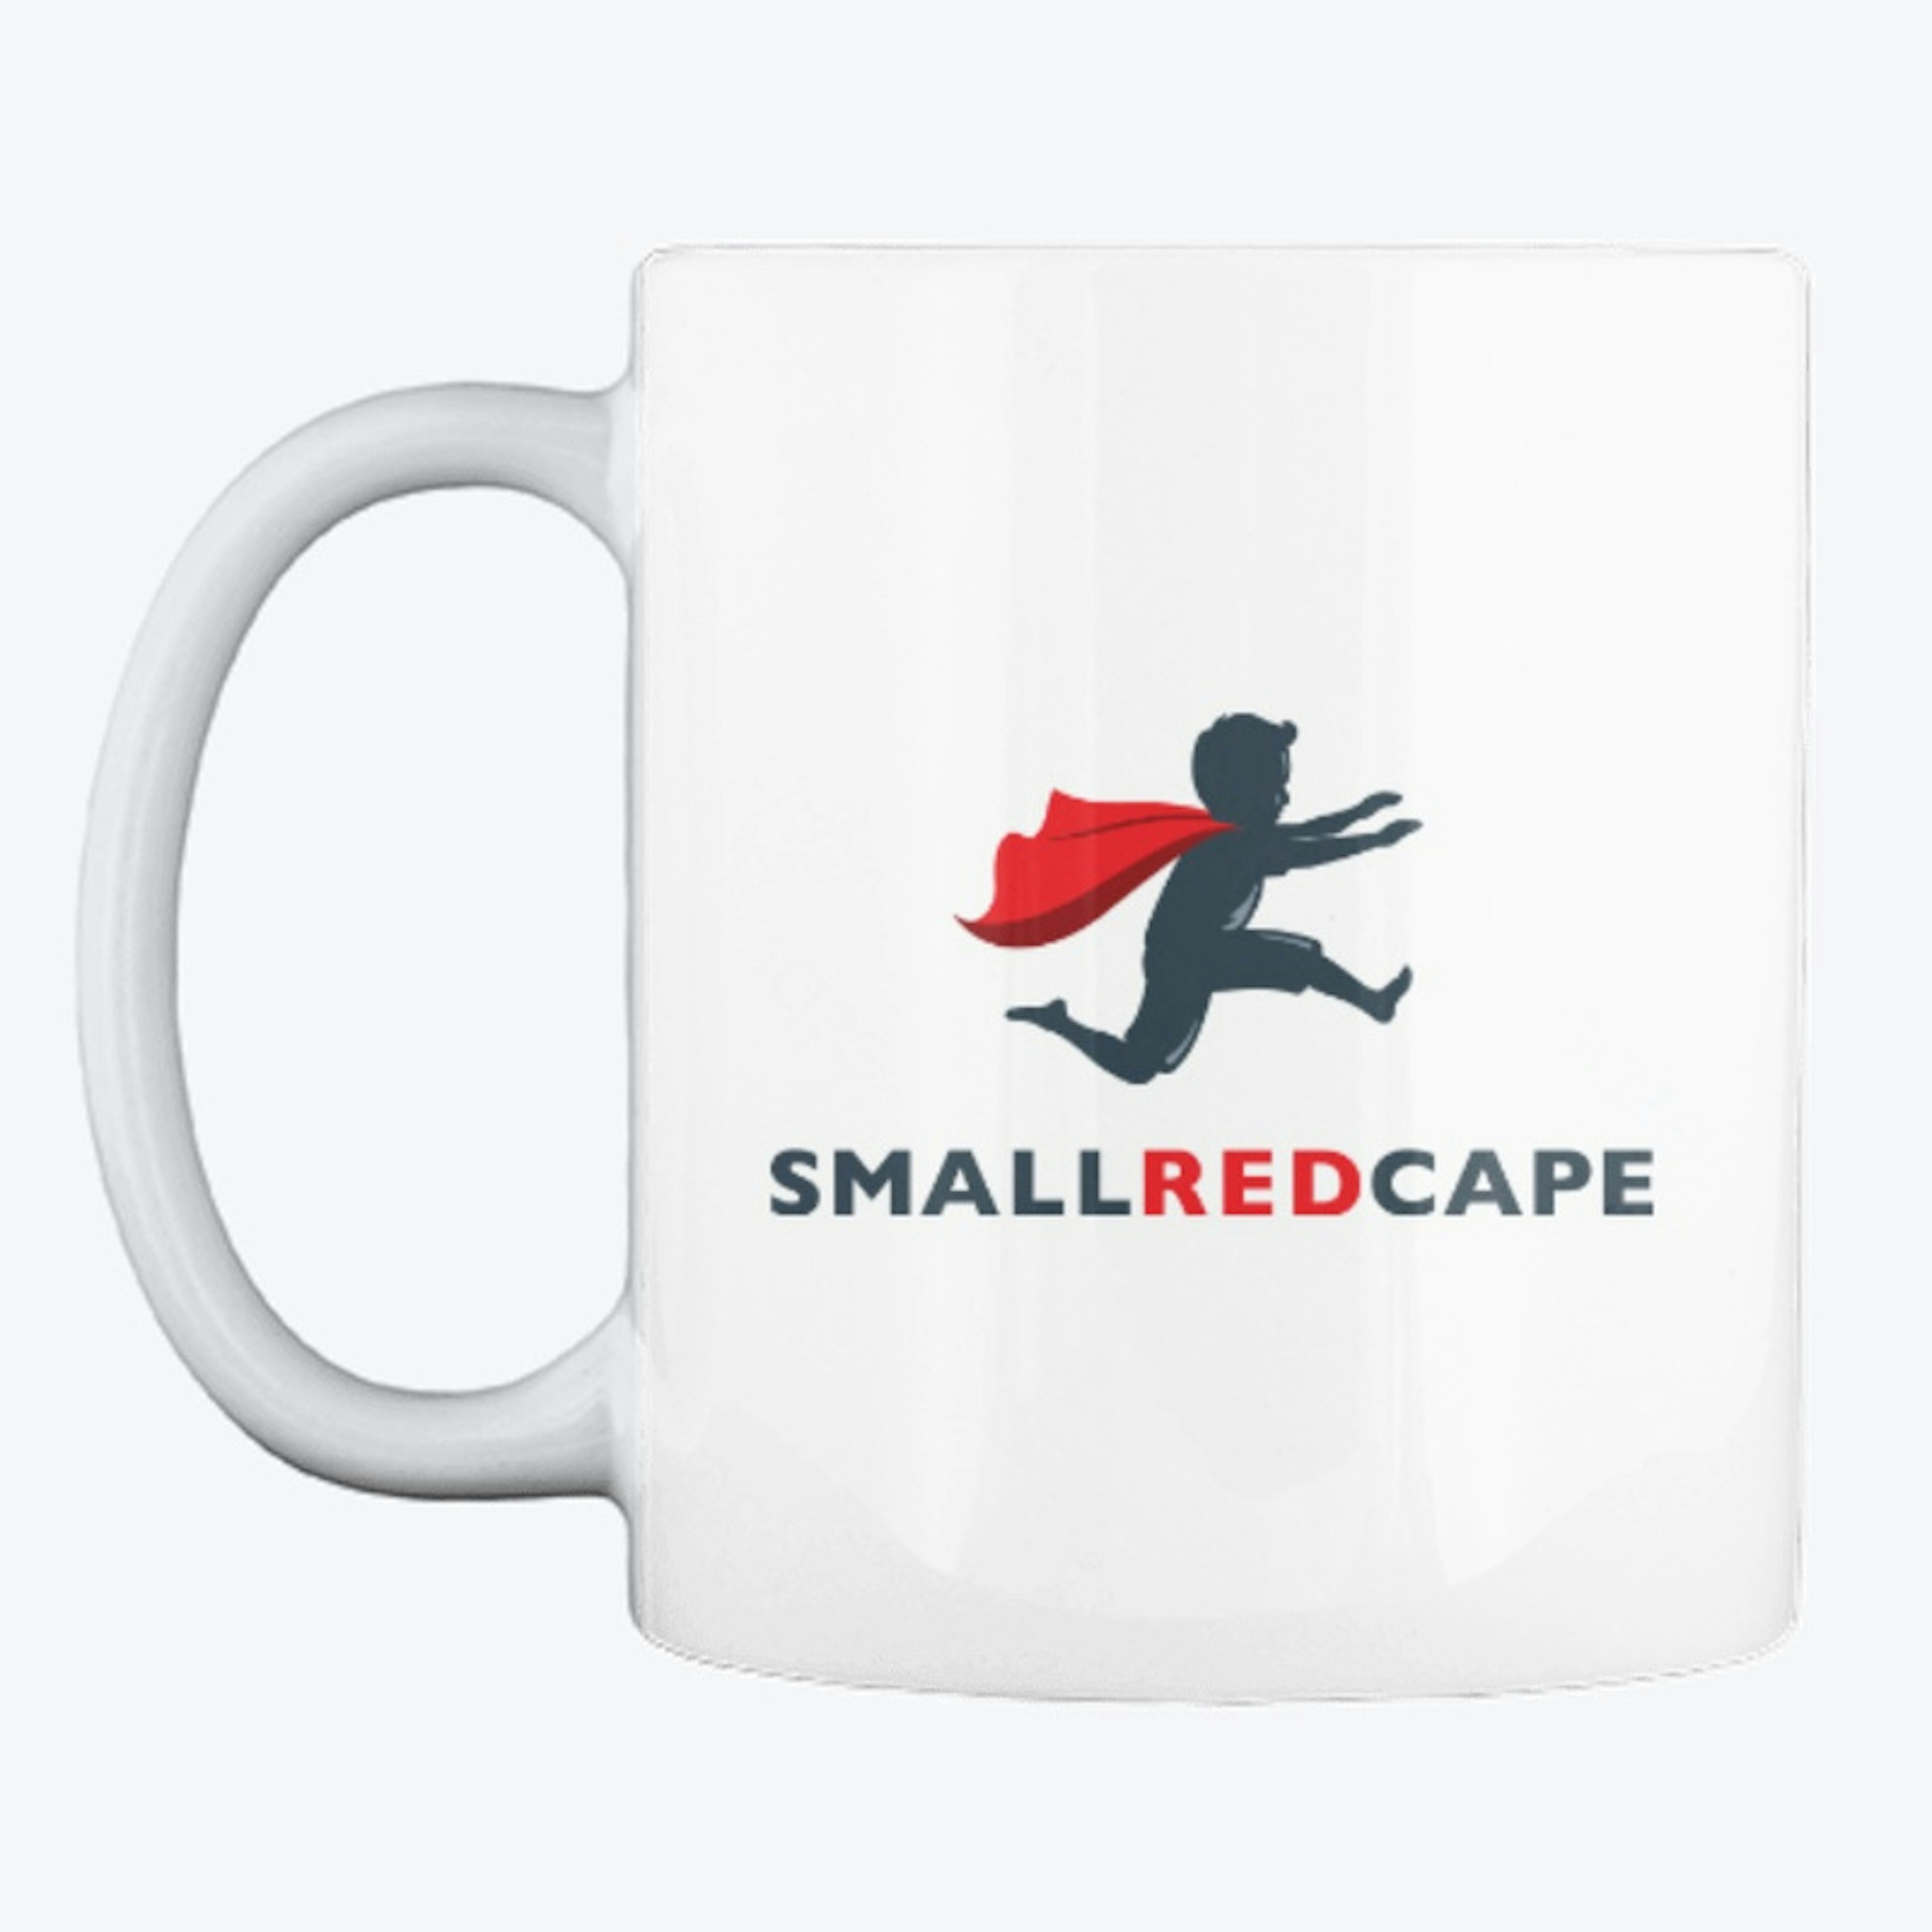 Small Red Cape